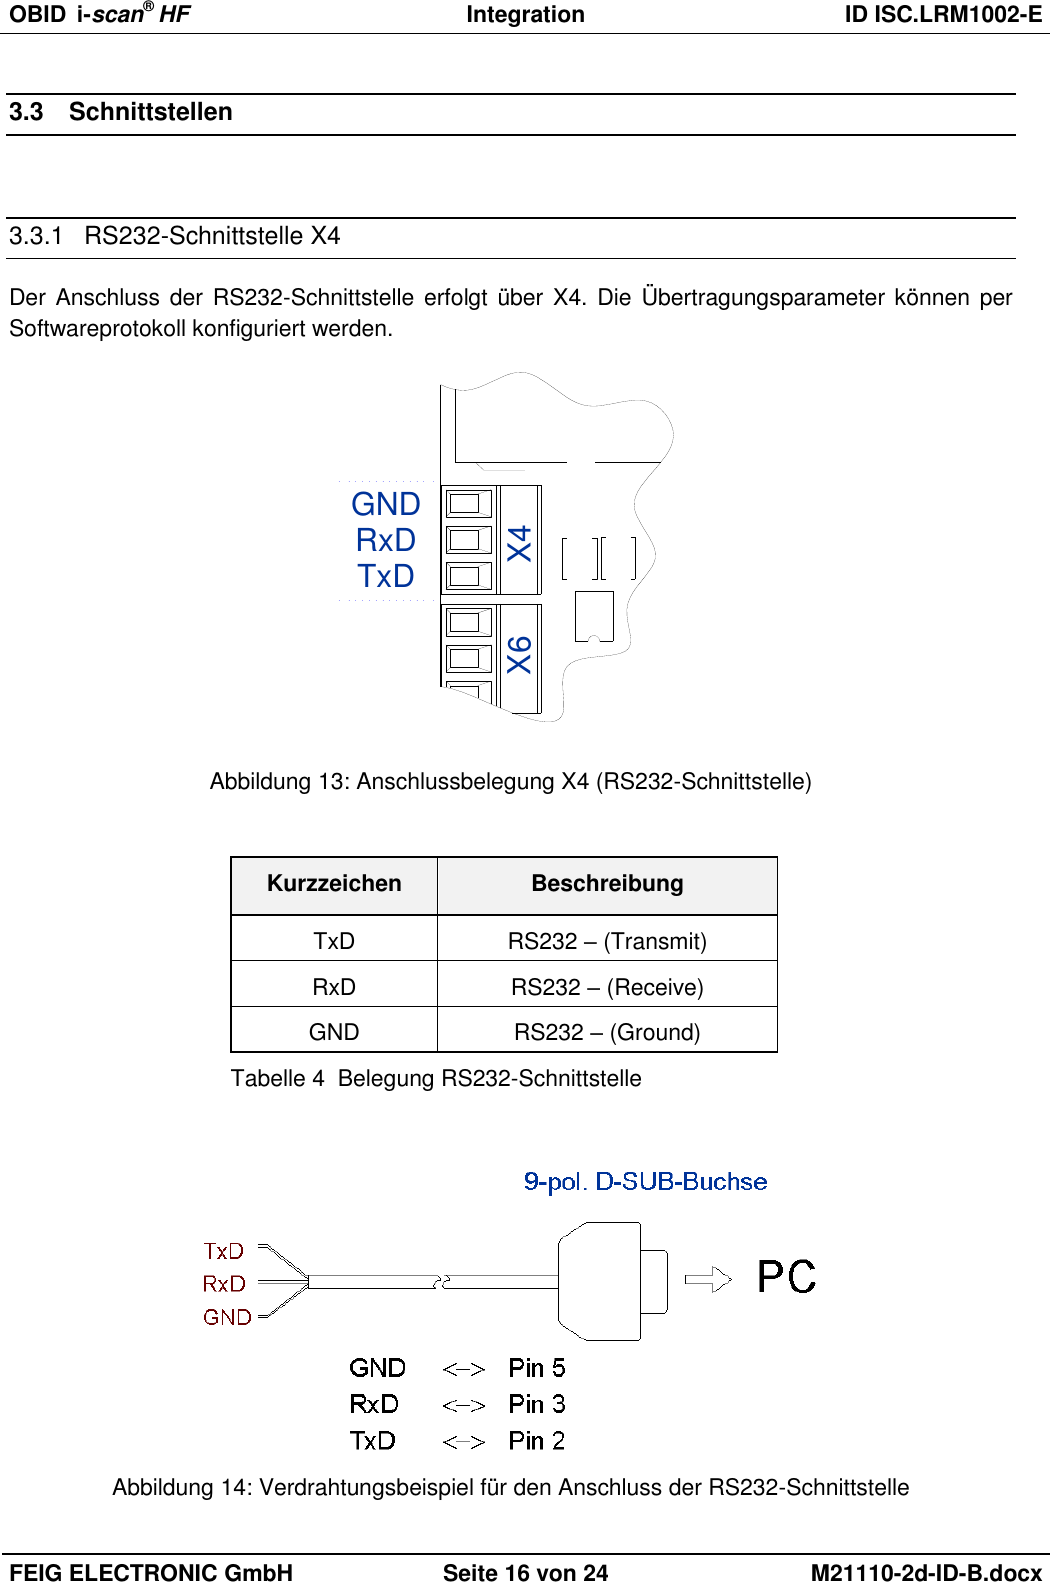 OBID  i-scan® HF Integration  ID ISC.LRM1002-E  FEIG ELECTRONIC GmbH Seite 16 von 24 M21110-2d-ID-B.docx  3.3  Schnittstellen  3.3.1  RS232-Schnittstelle X4 Der Anschluss der  RS232-Schnittstelle erfolgt über X4. Die  Übertragungsparameter können per Softwareprotokoll konfiguriert werden. TxDRxDGNDX4X6 Abbildung 13: Anschlussbelegung X4 (RS232-Schnittstelle)  Kurzzeichen Beschreibung TxD RS232 – (Transmit) RxD RS232 – (Receive) GND RS232 – (Ground) Tabelle 4  Belegung RS232-Schnittstelle   Abbildung 14: Verdrahtungsbeispiel für den Anschluss der RS232-Schnittstelle 